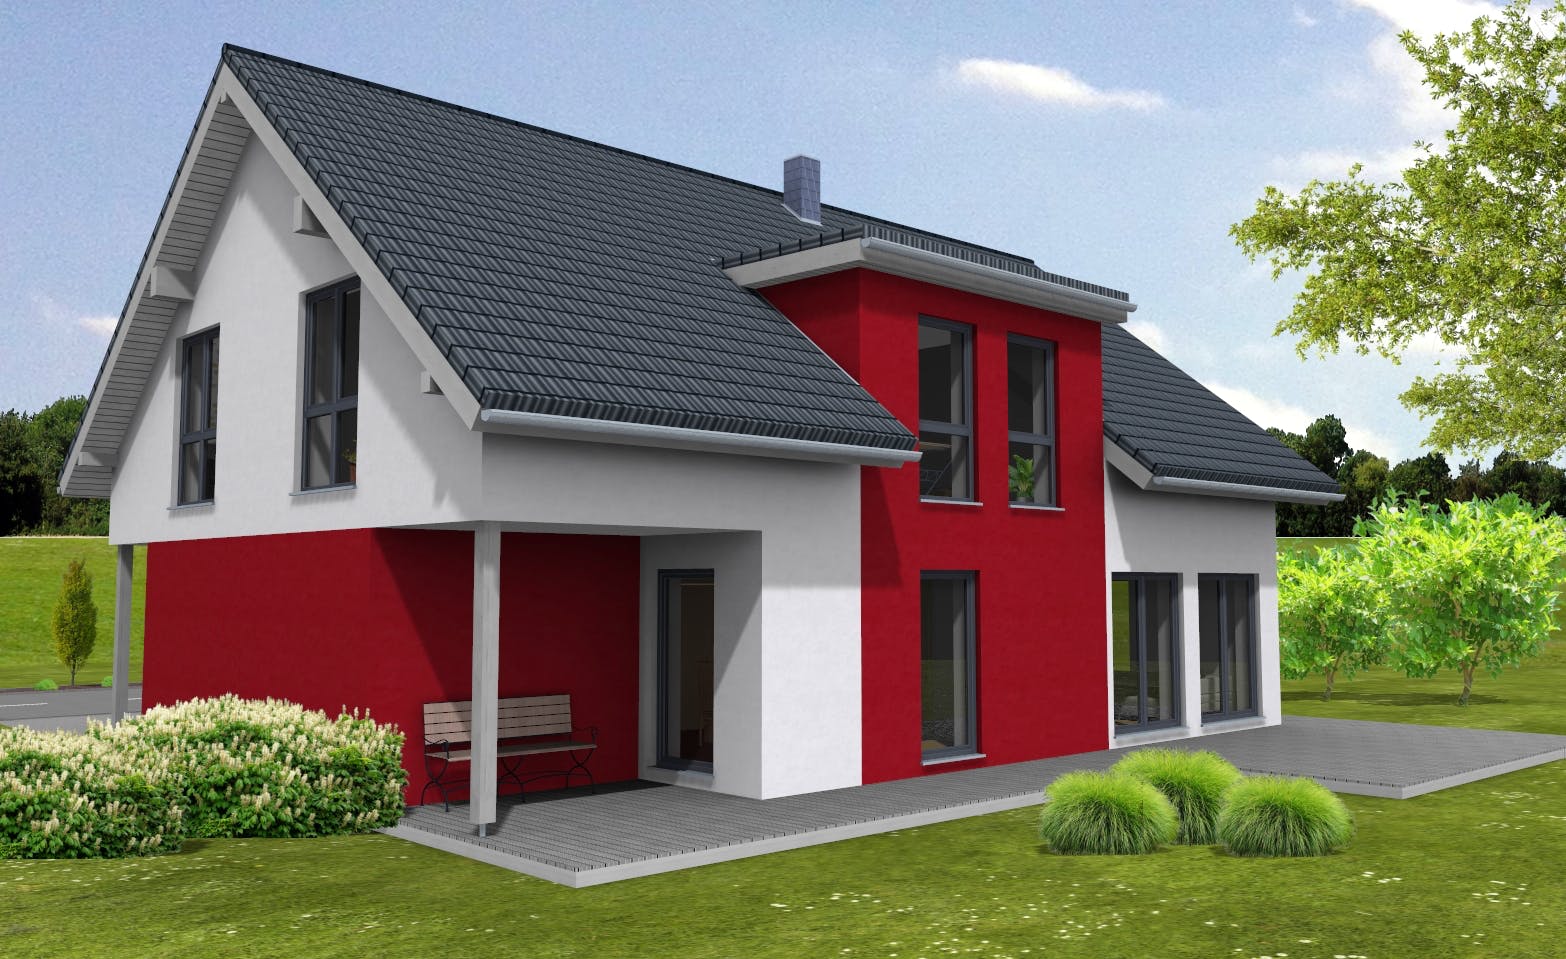 Fertighaus Lifestyle 219 - inkl. überbauter Garage von Suckfüll Energiesparhaus Schlüsselfertig ab 462225€, Außenansicht 1